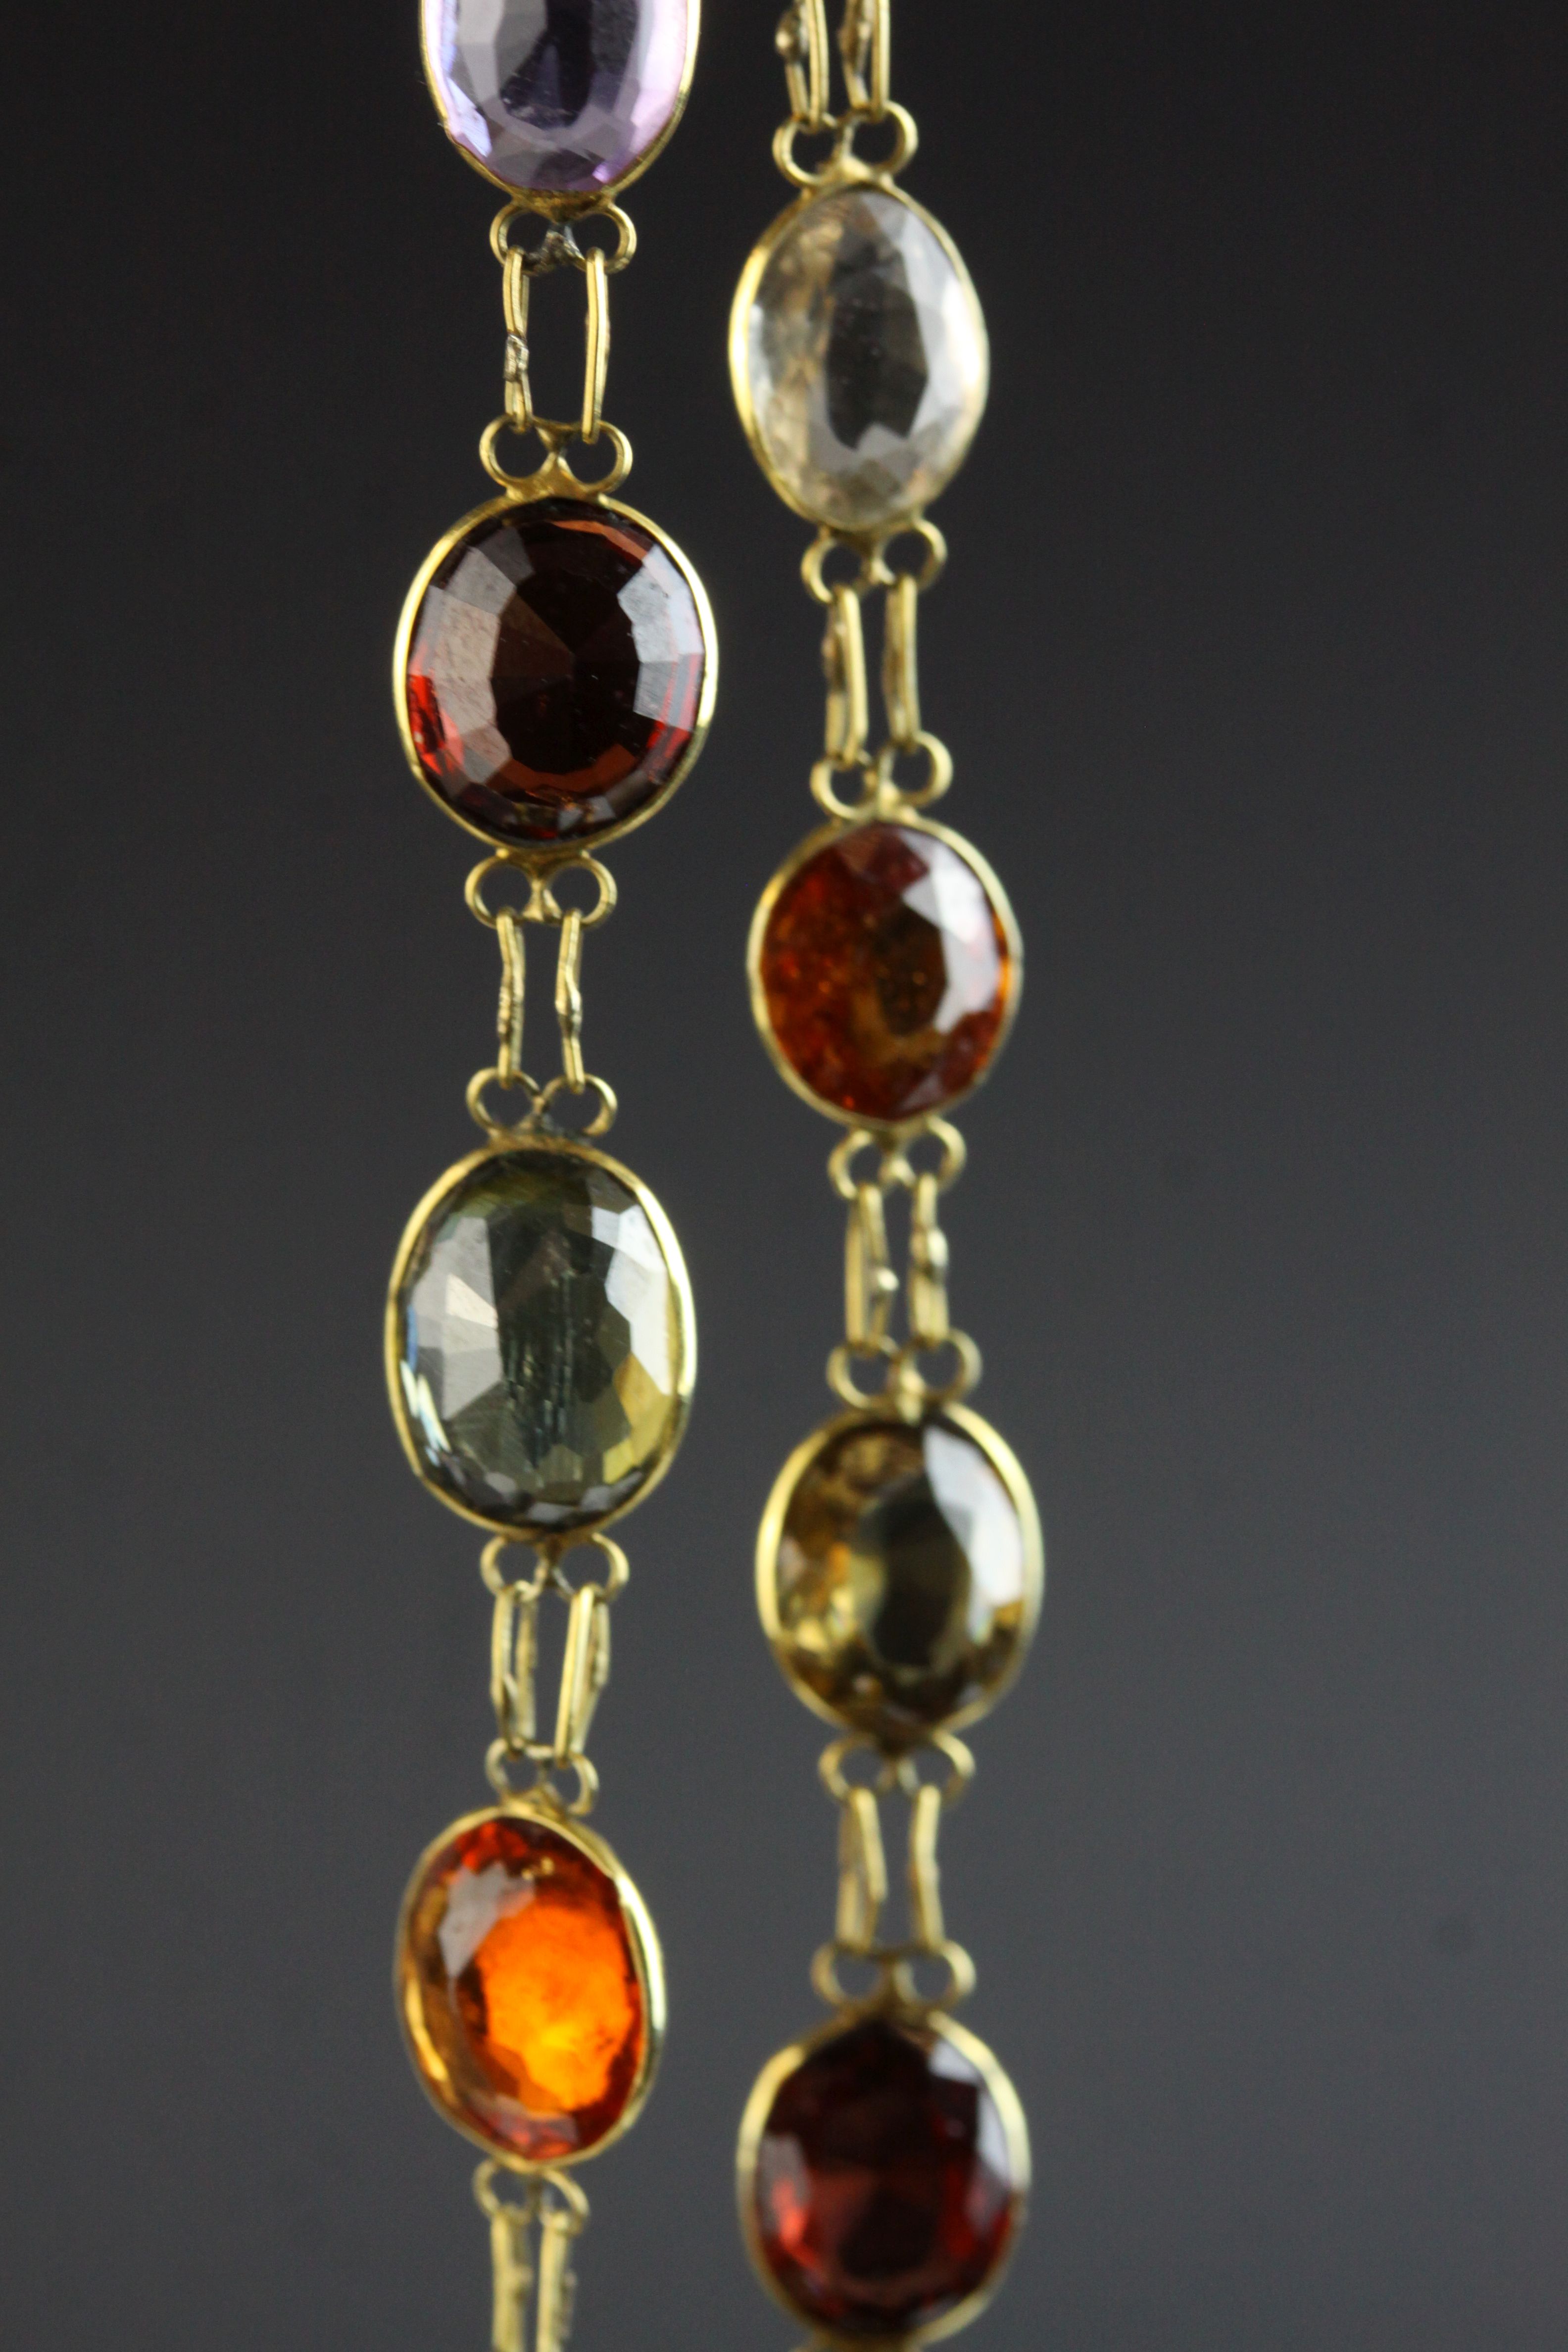 Multi gemstone unmarked yellow gold riviere necklace, comprising garnet, orange garnet, citrine, - Image 3 of 6